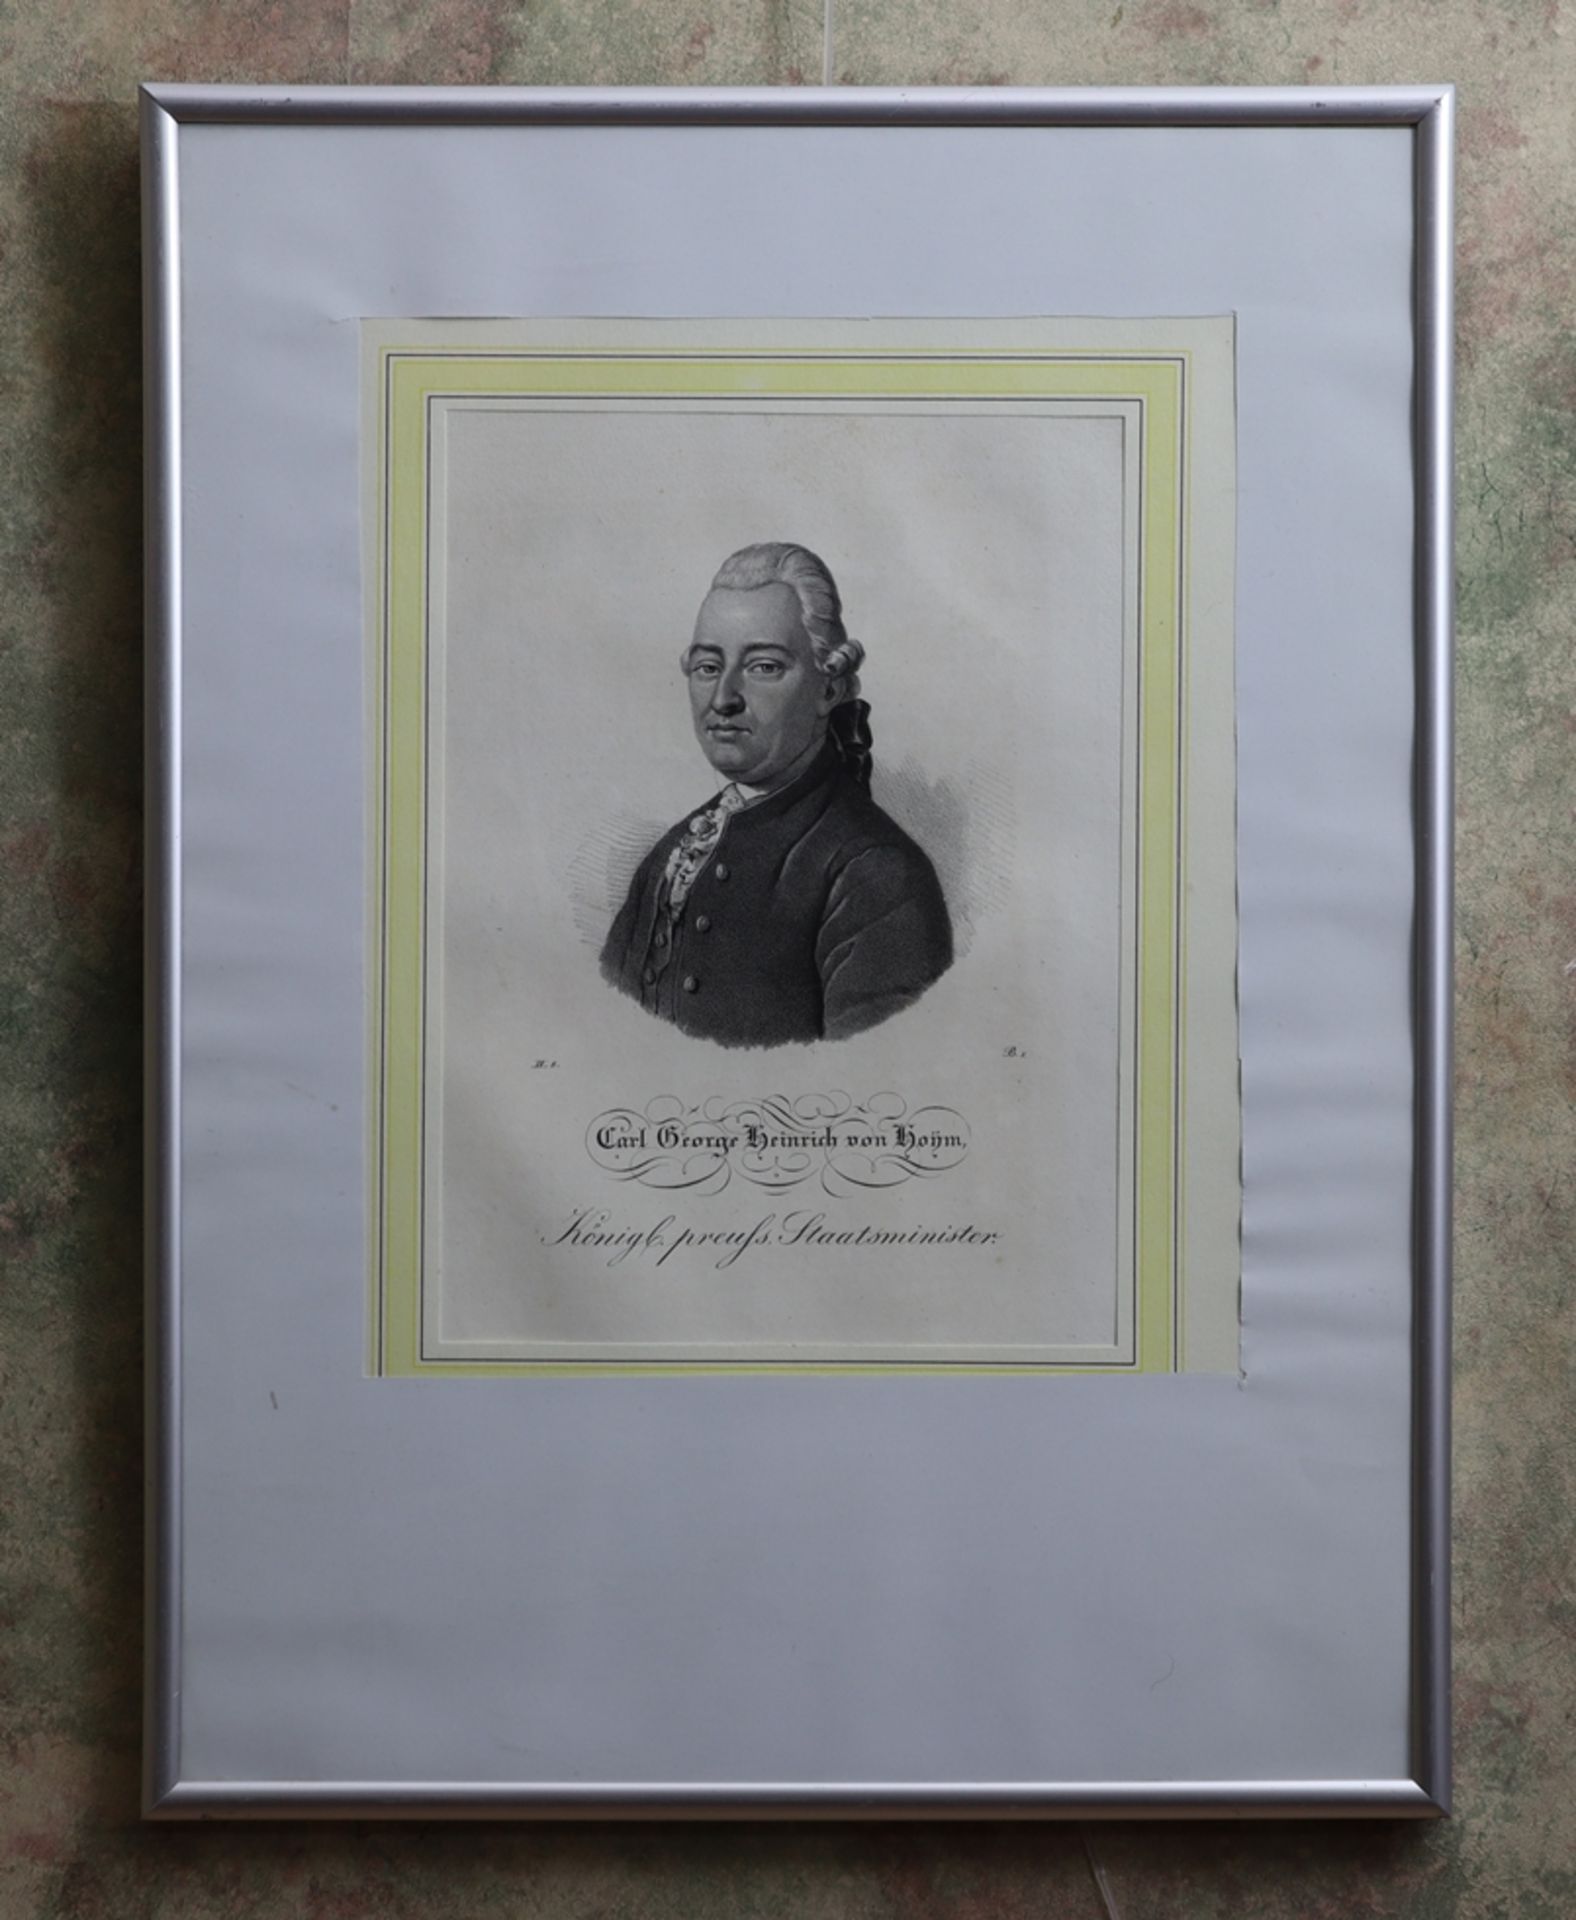 Lithografie aus Borussia 1839, "Carl George Heinrich von Hoym, Königl. preuss. Staatsminister" - Bild 2 aus 2